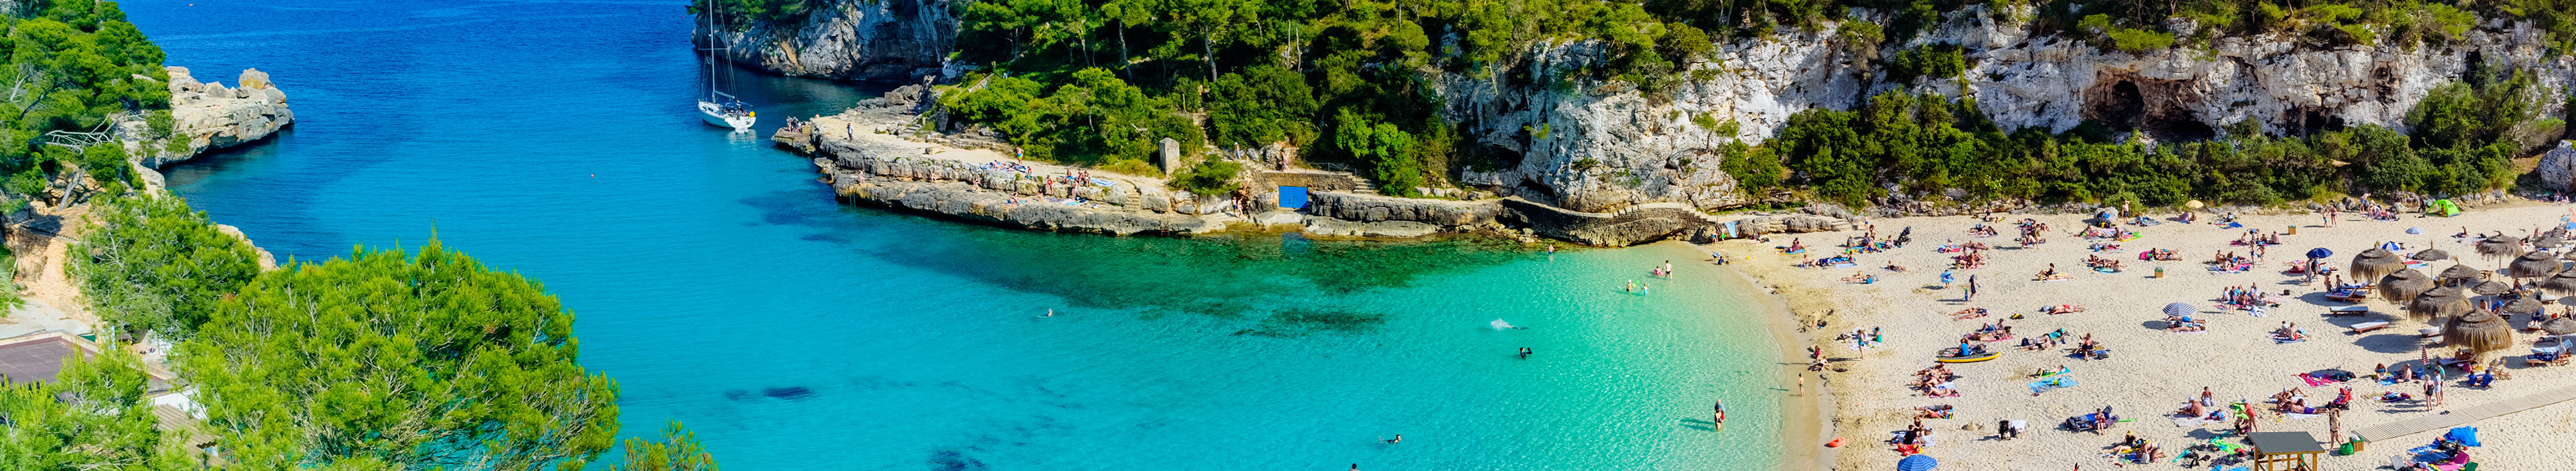 Exotisches Buchtresort am Strand von Cala Llombards, Insel Mallorca in Spanien. 